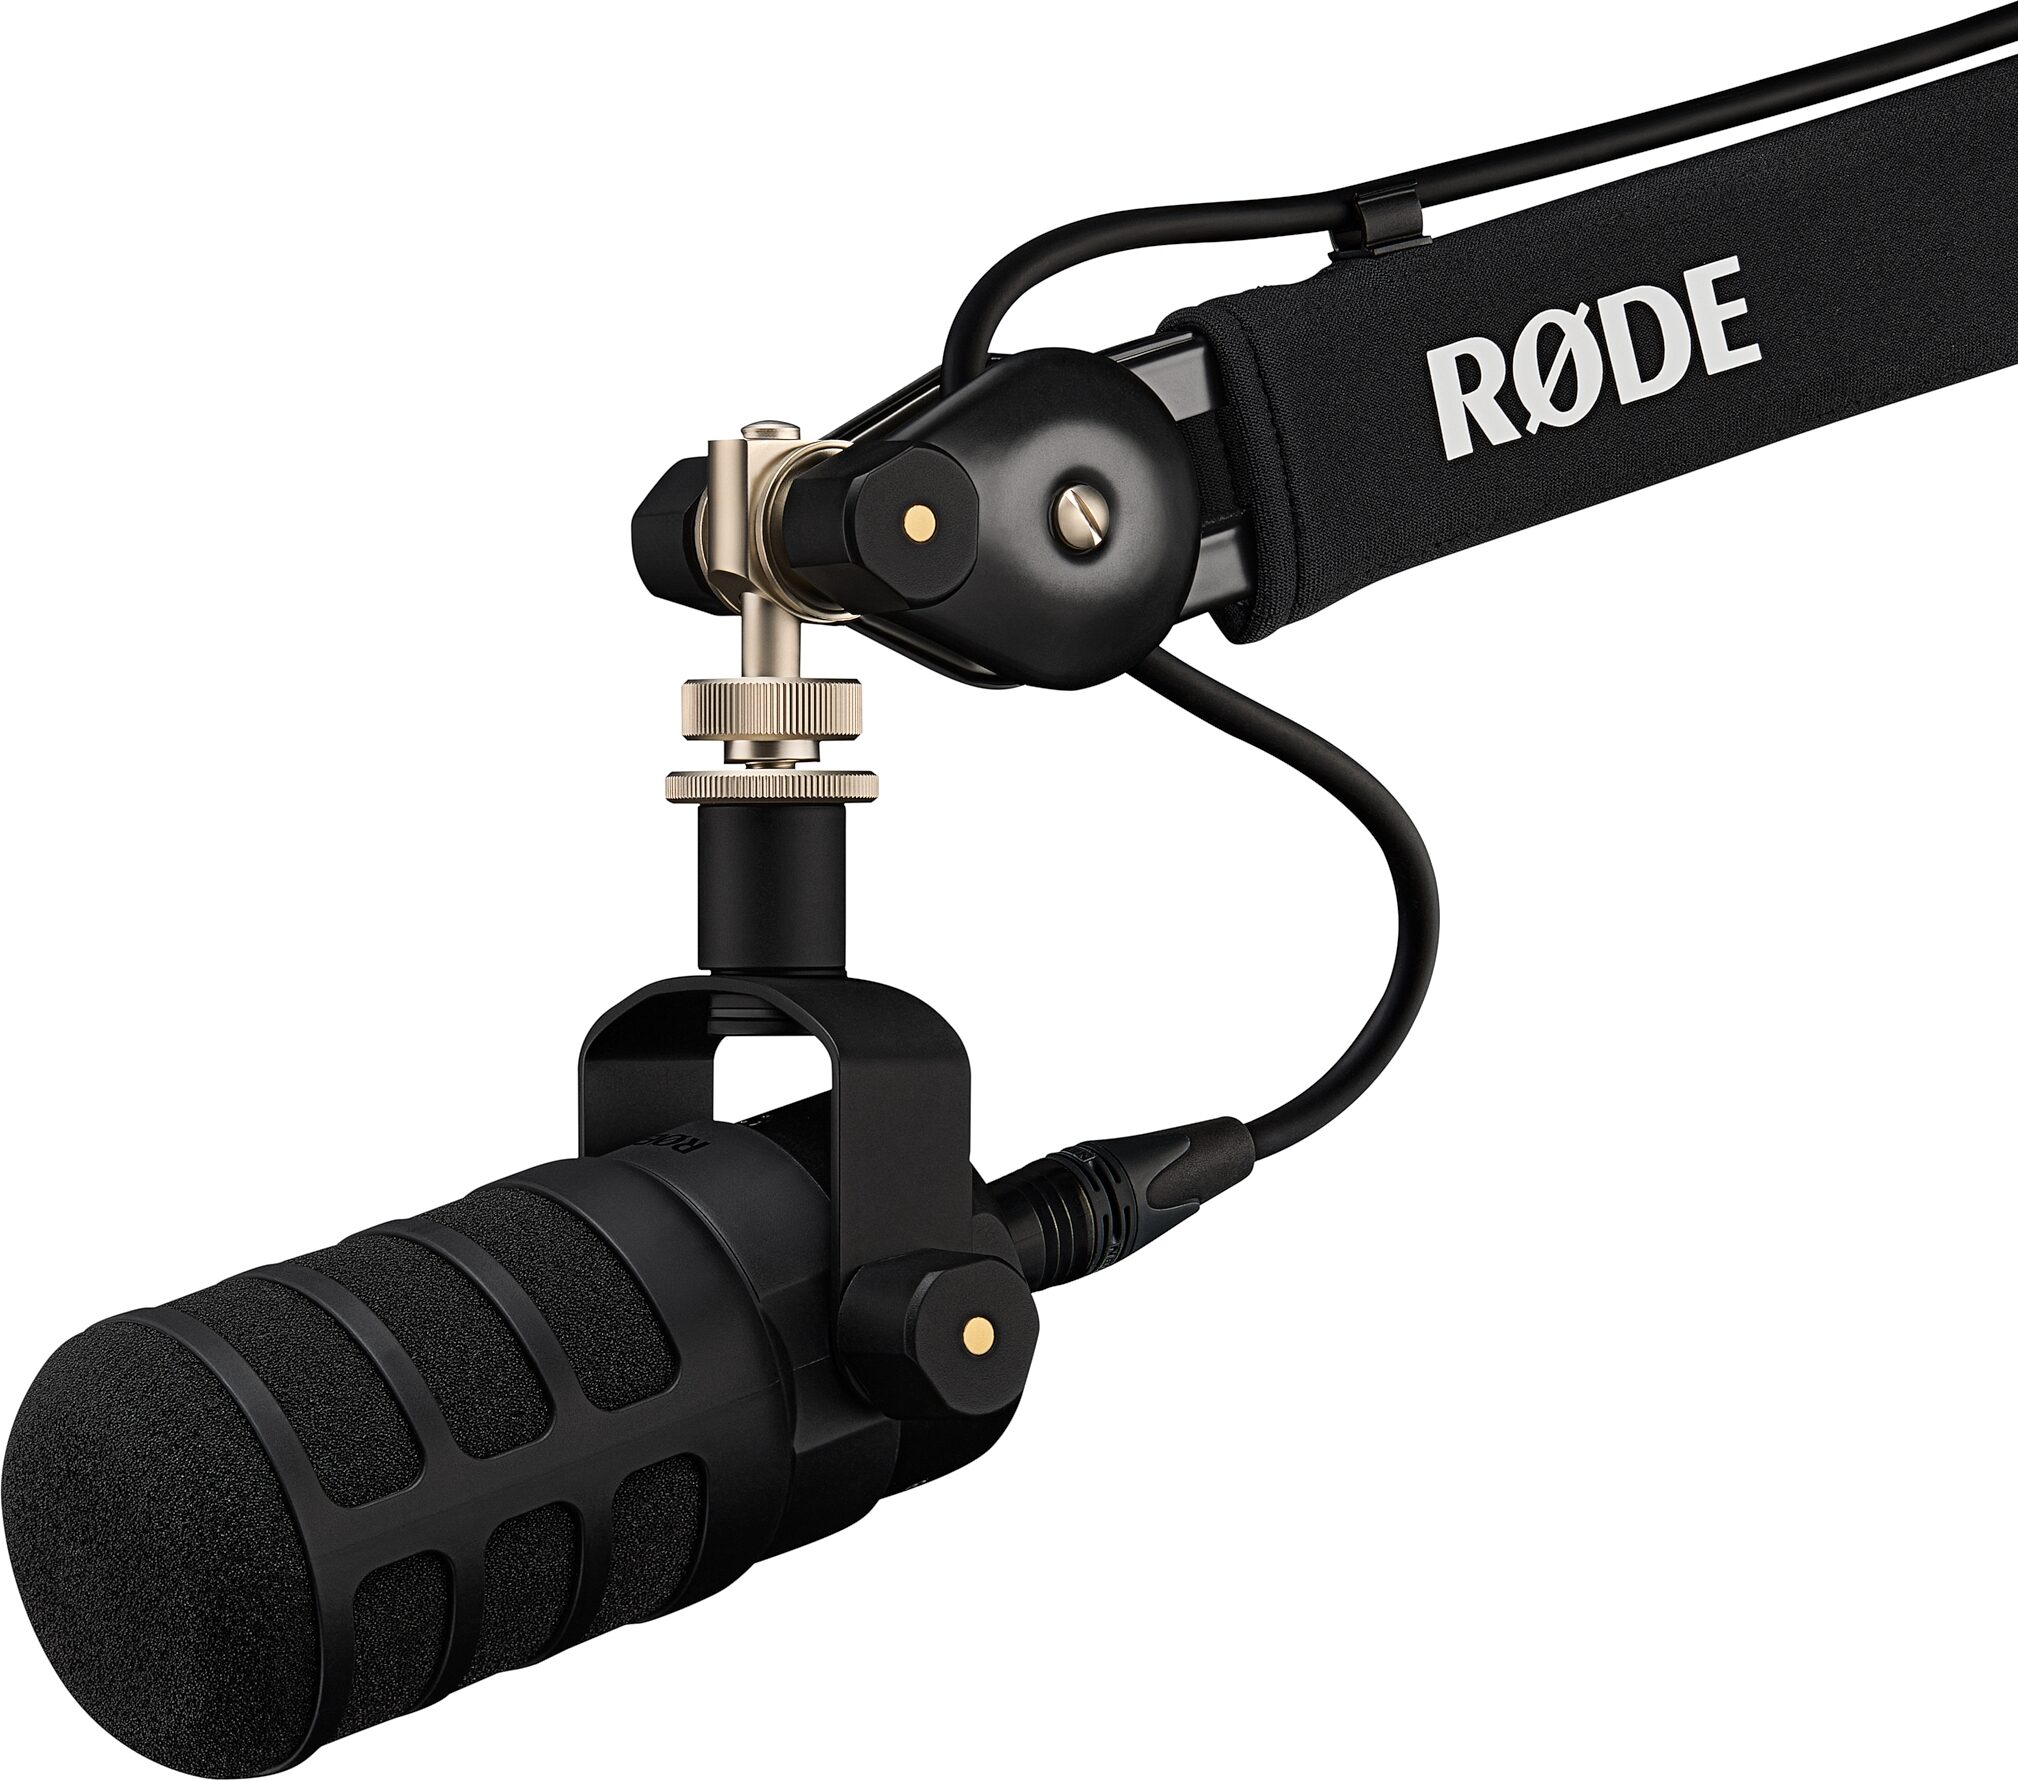 Rode PodMic USB Ultraversatile Dynamic USB + XLR Microphone